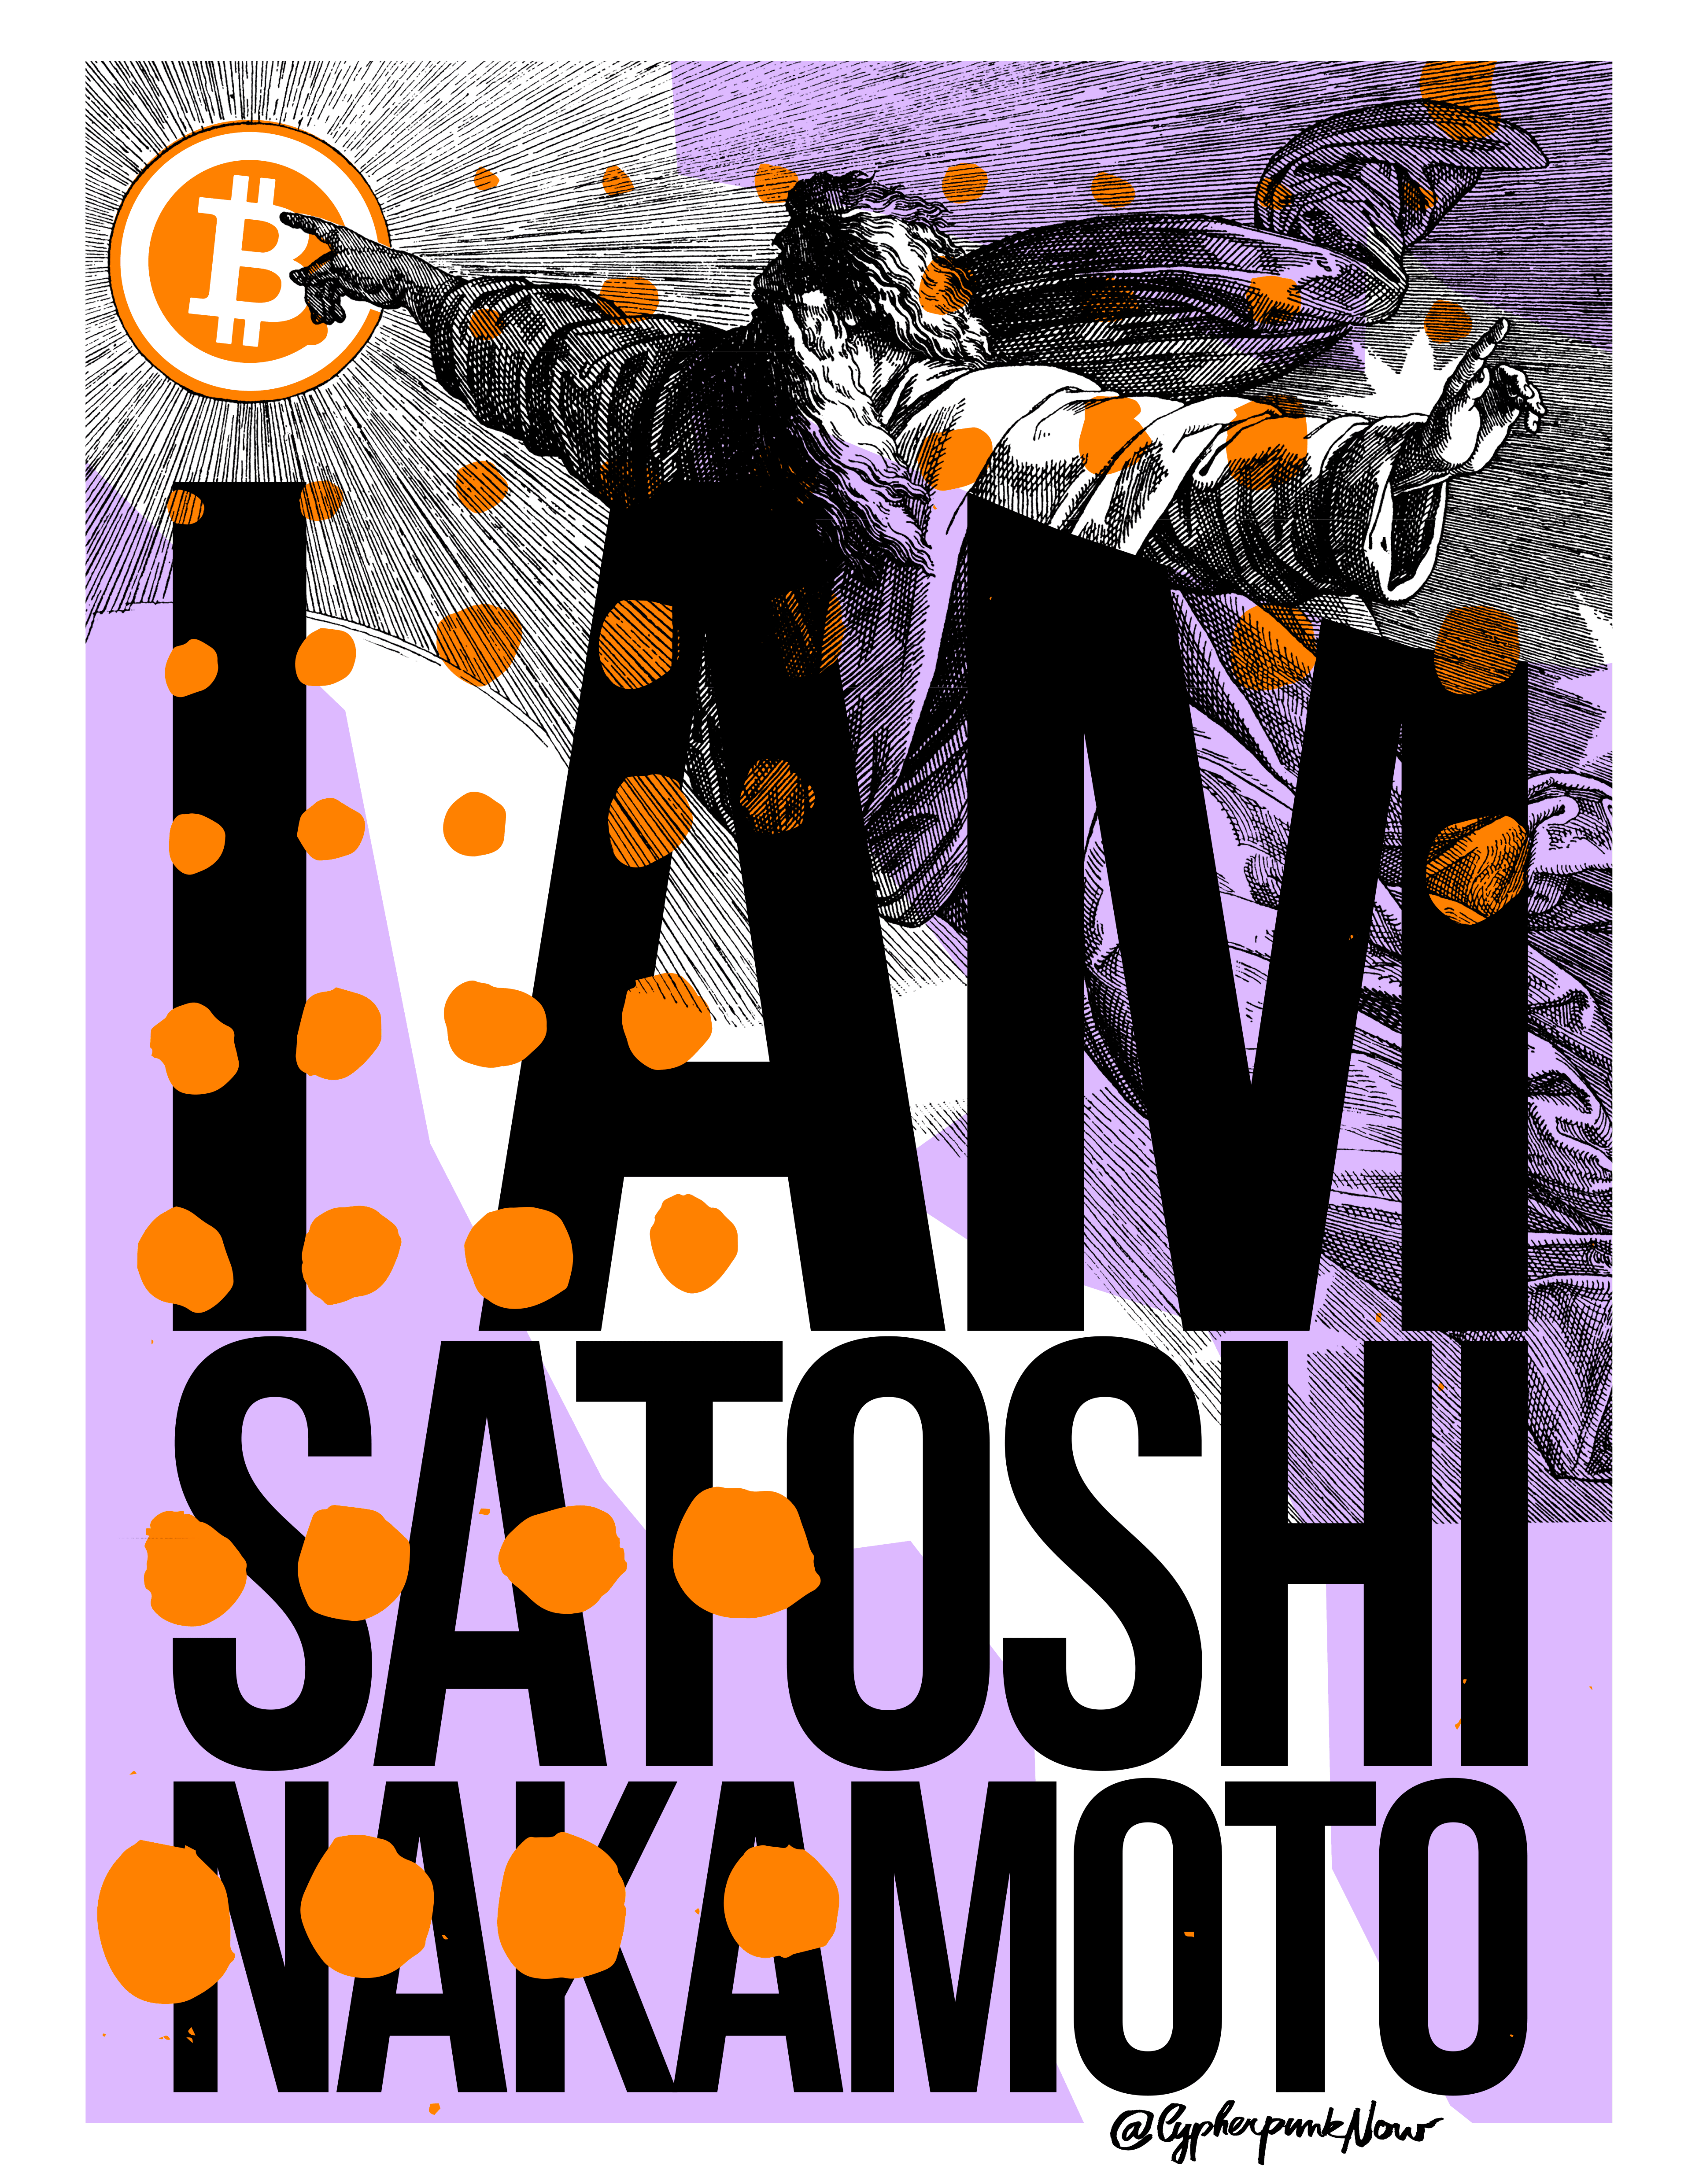 I AM SATOSHI NAKAMOTO